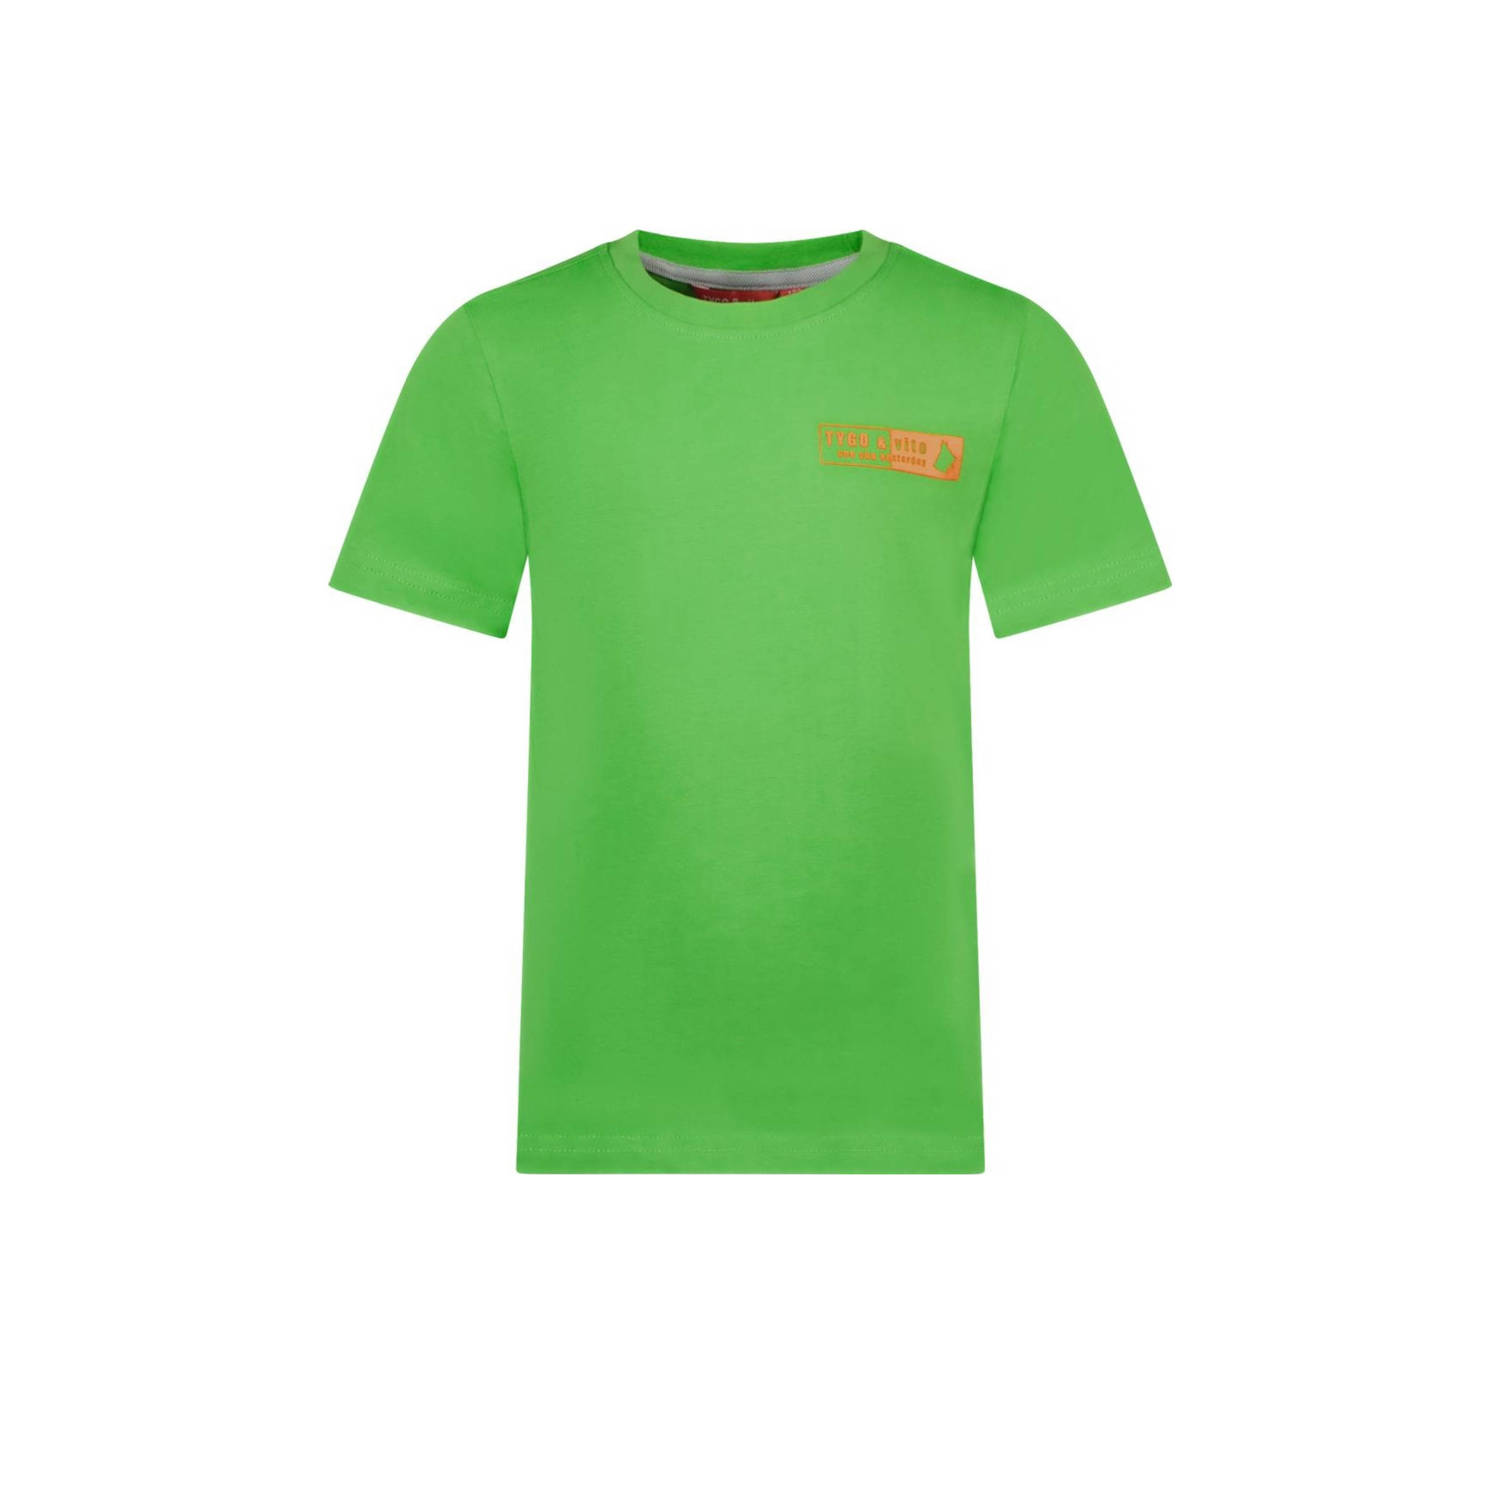 TYGO & vito T-shirt Tijn met printopdruk neongroen Jongens Katoen Ronde hals 110 116